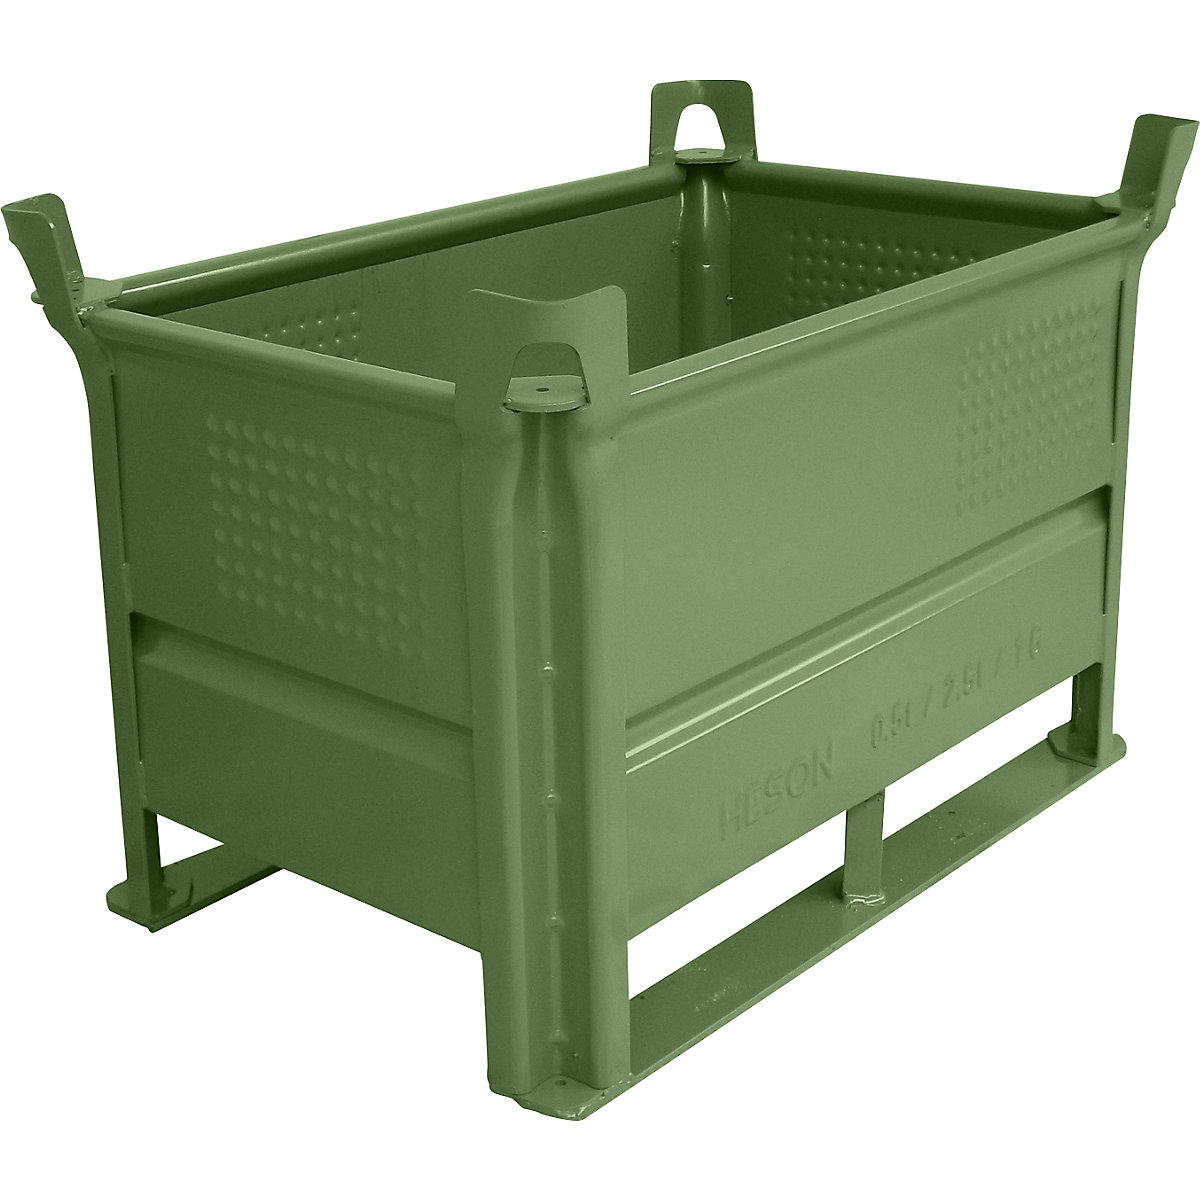 Stohovací přepravka s ližinami – Heson, d x š 800 x 500 mm, nosnost 1000 kg, zelená, od 1 ks-3